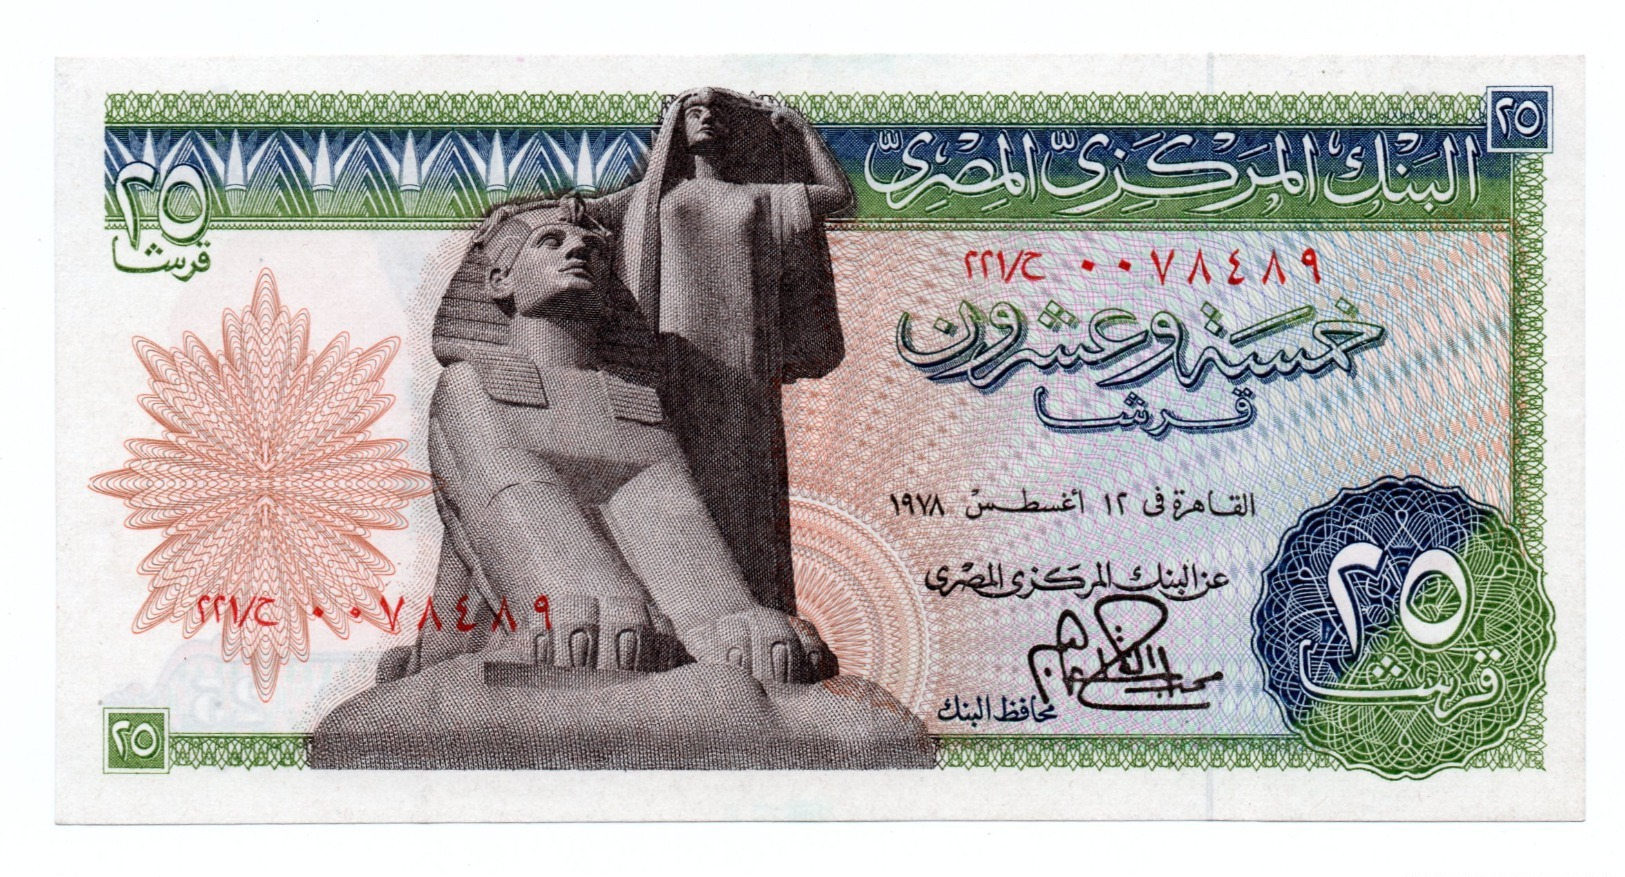 EGYPT»25 PIATRES»1976»P-47 (WORLD PAPER MONEY)»ABOUT UNC CONDITION - Egitto